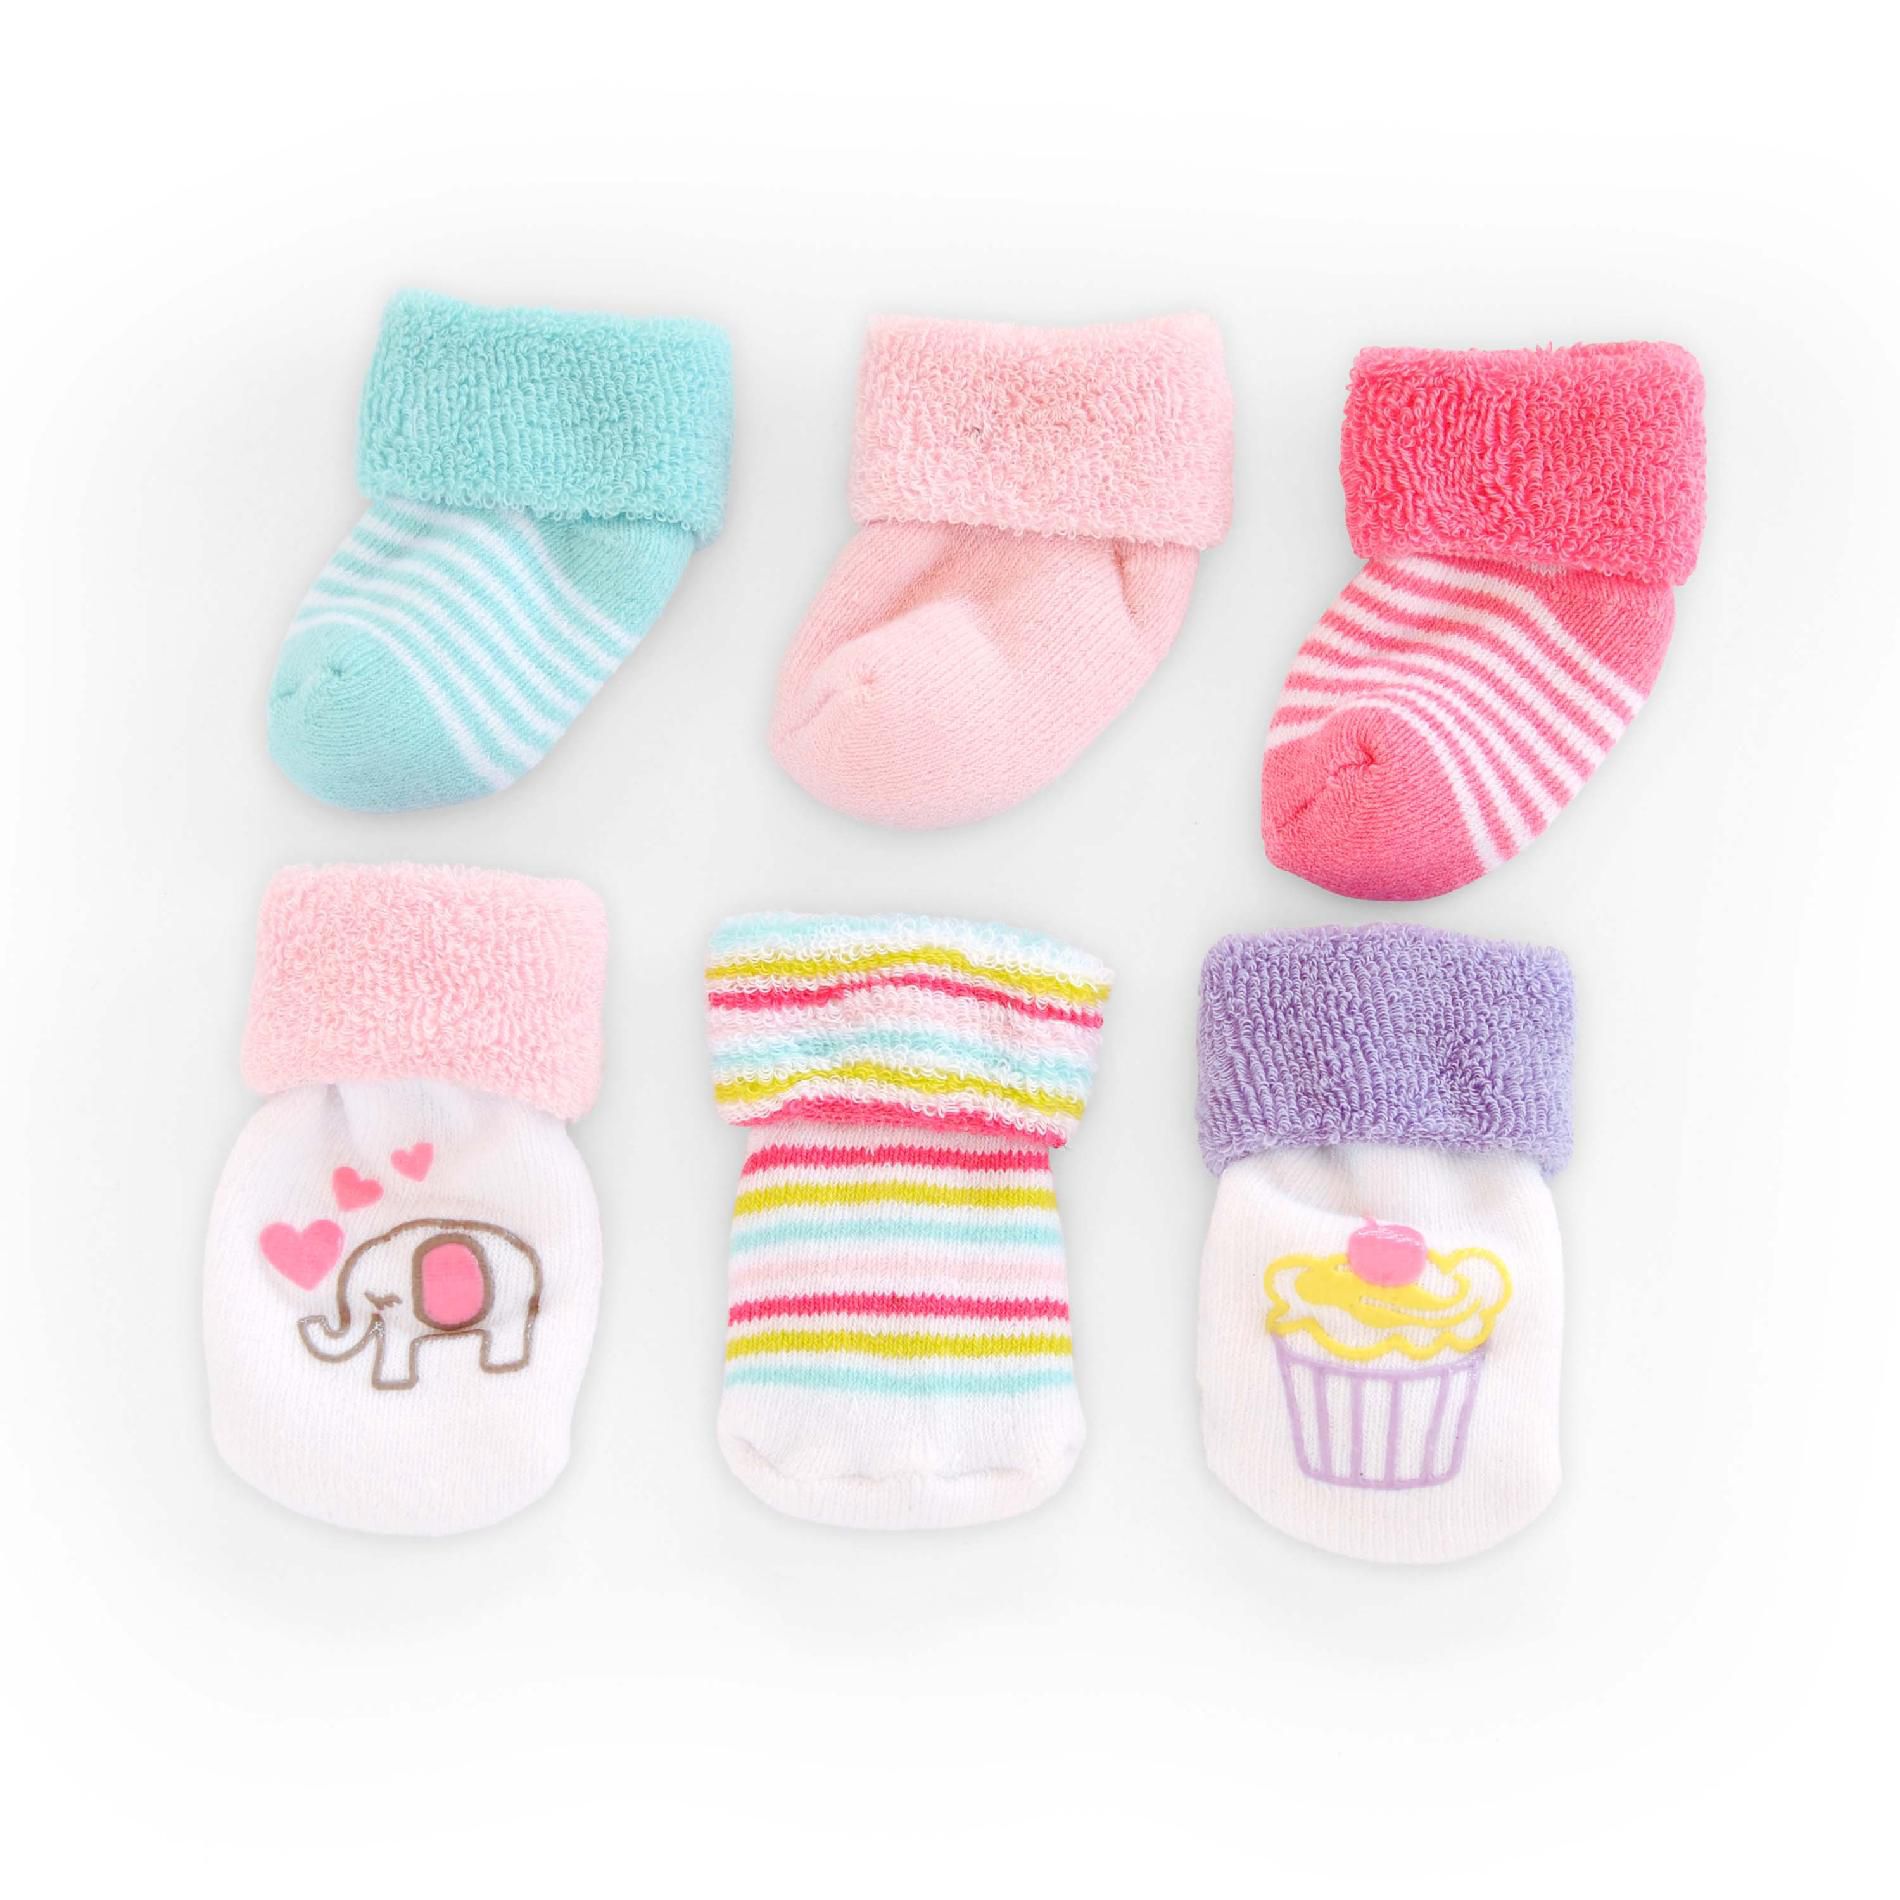 Carter's 0-3 Months Infant Girl&#8217;s Socks Wardrobe 6 Pack